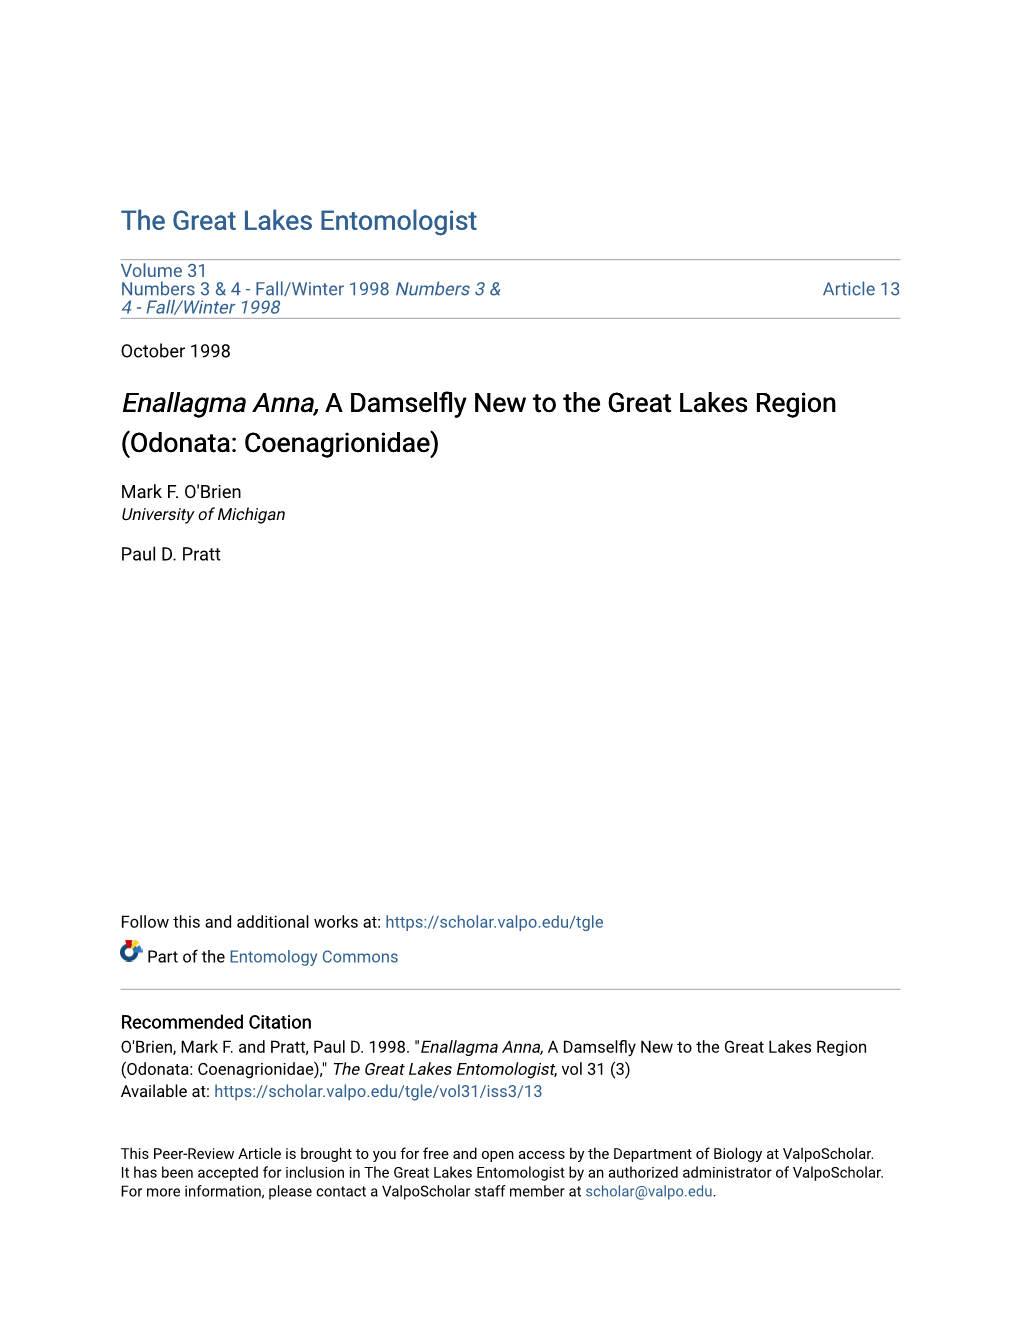 Enallagma Anna, a Damselfly New to the Great Lakes Region (Odonata